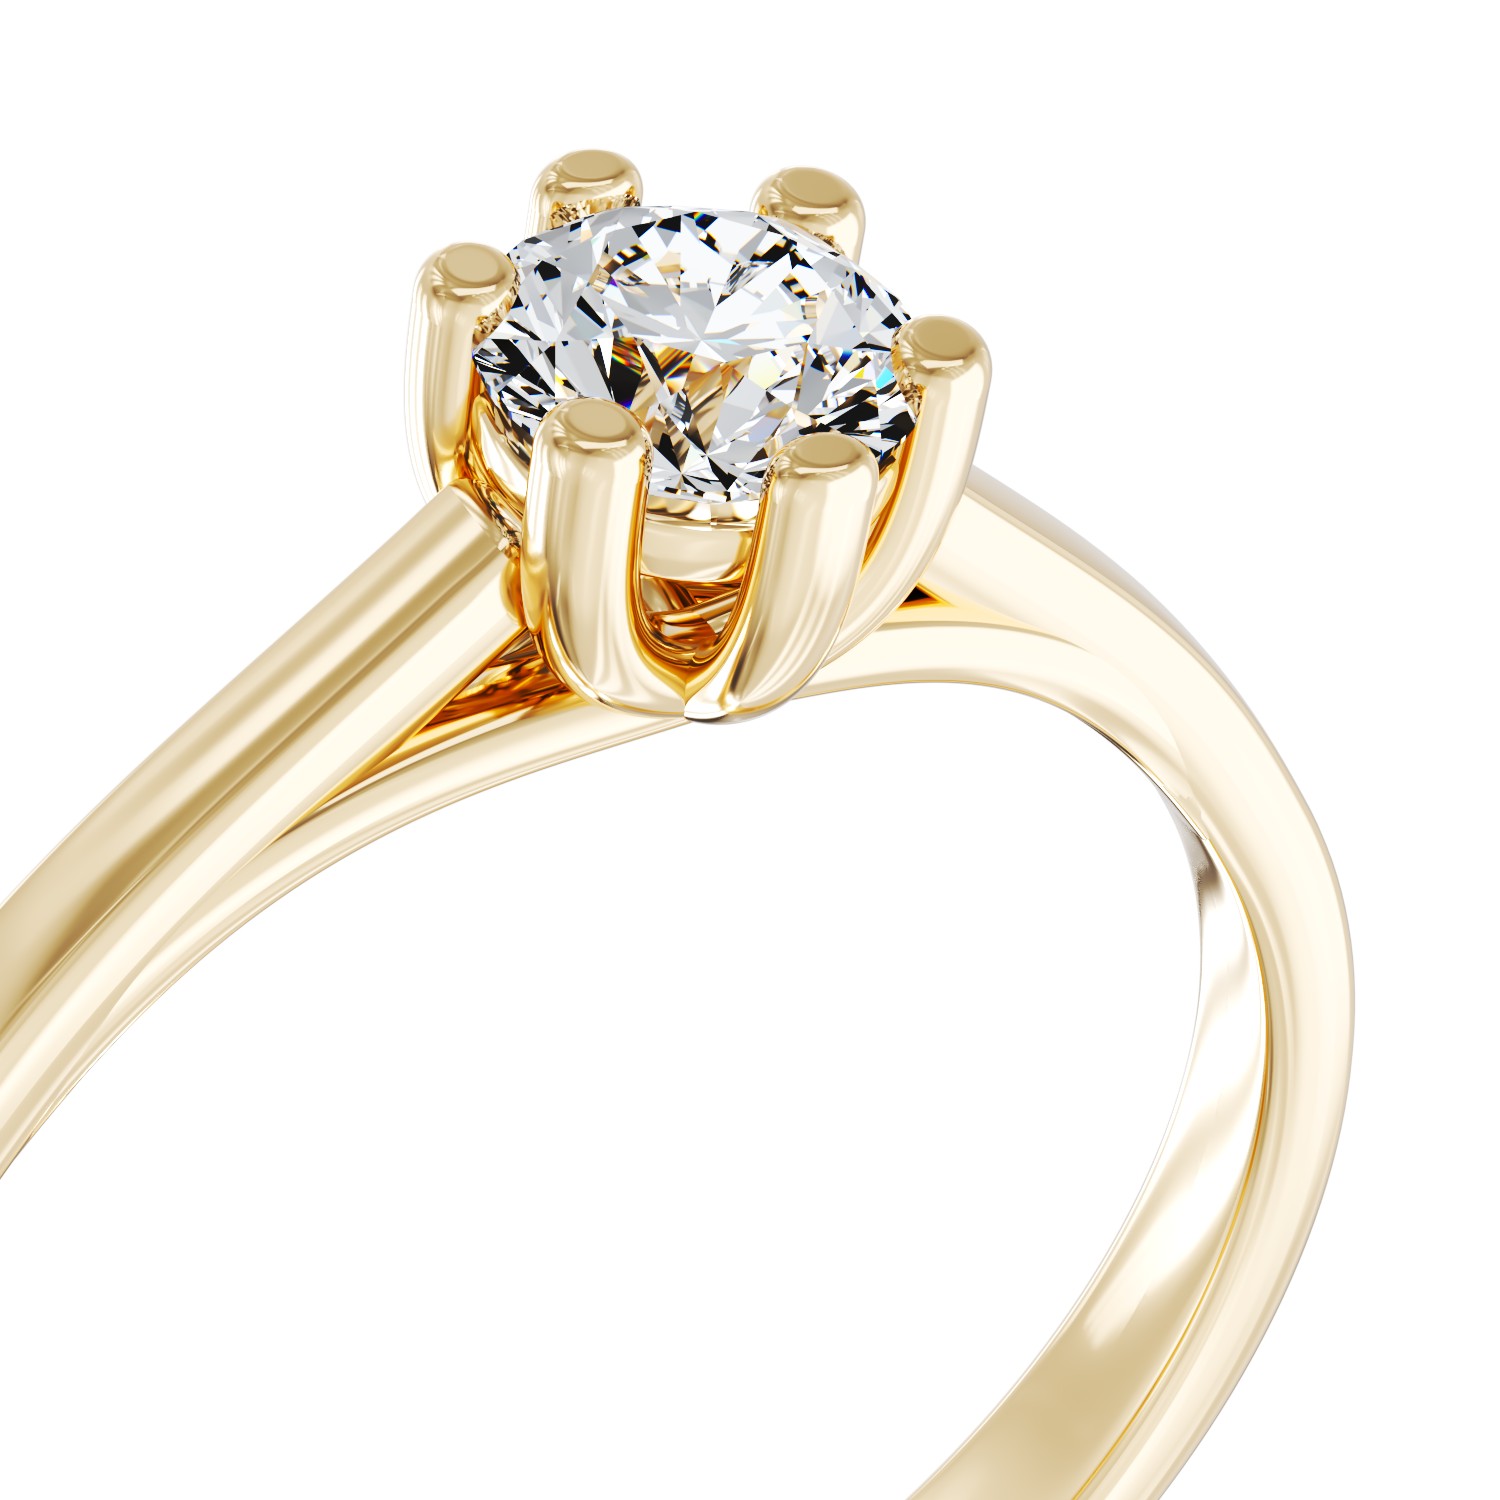 Eljegyzési gyűrű 18K-os sárga aranyból 0,35ct gyémánttal. Gramm: 4,2